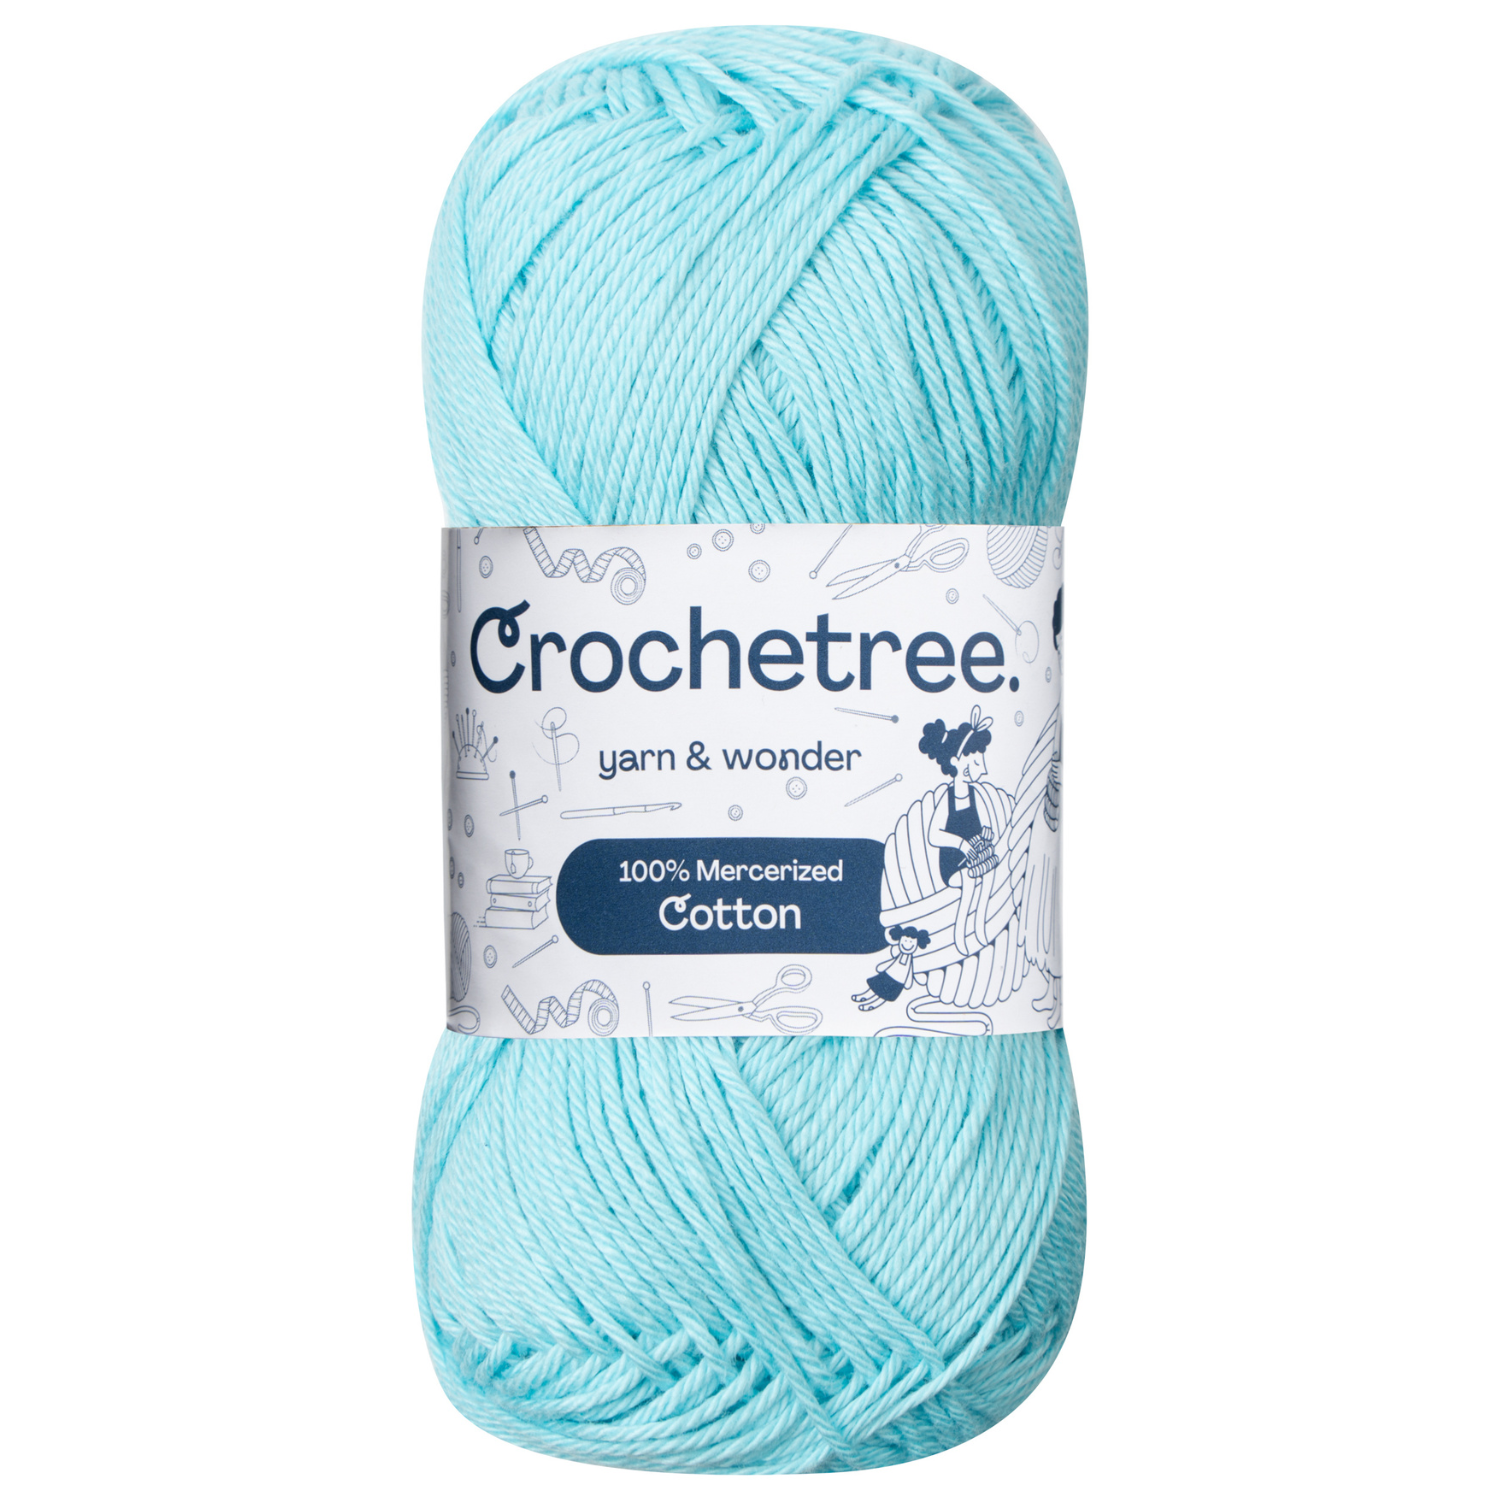 Crochetree 100% Mercerized Cotton Yarn, 50g / 125m, 4 Ply Fingering We